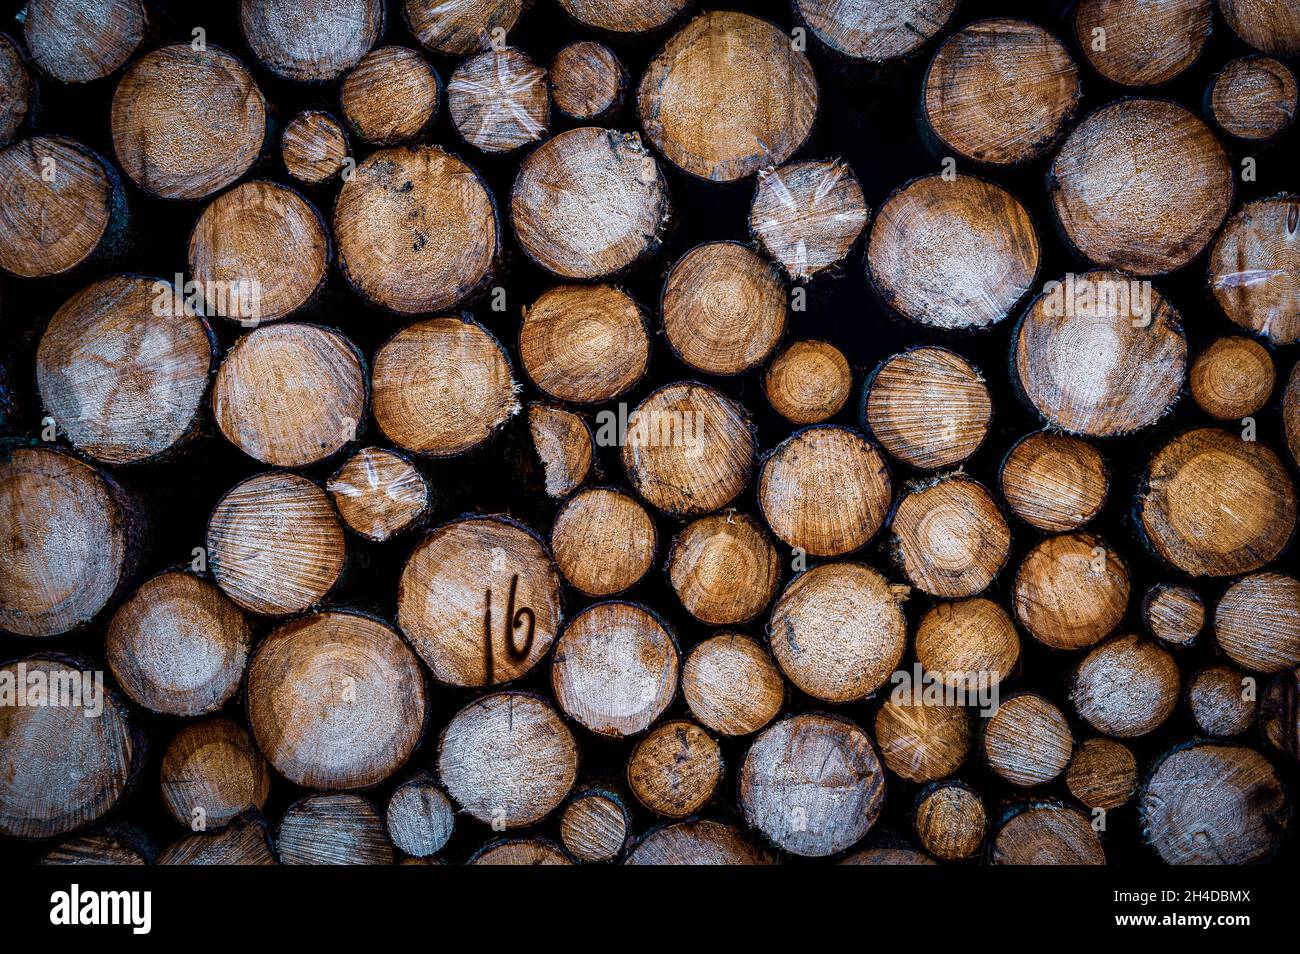 Concept de la foresterie, du bois de matière première ou du commerce du bois.Le bois fraîchement abattu est accumulé dans une forêt en Saxe (Allemagne). Banque D'Images